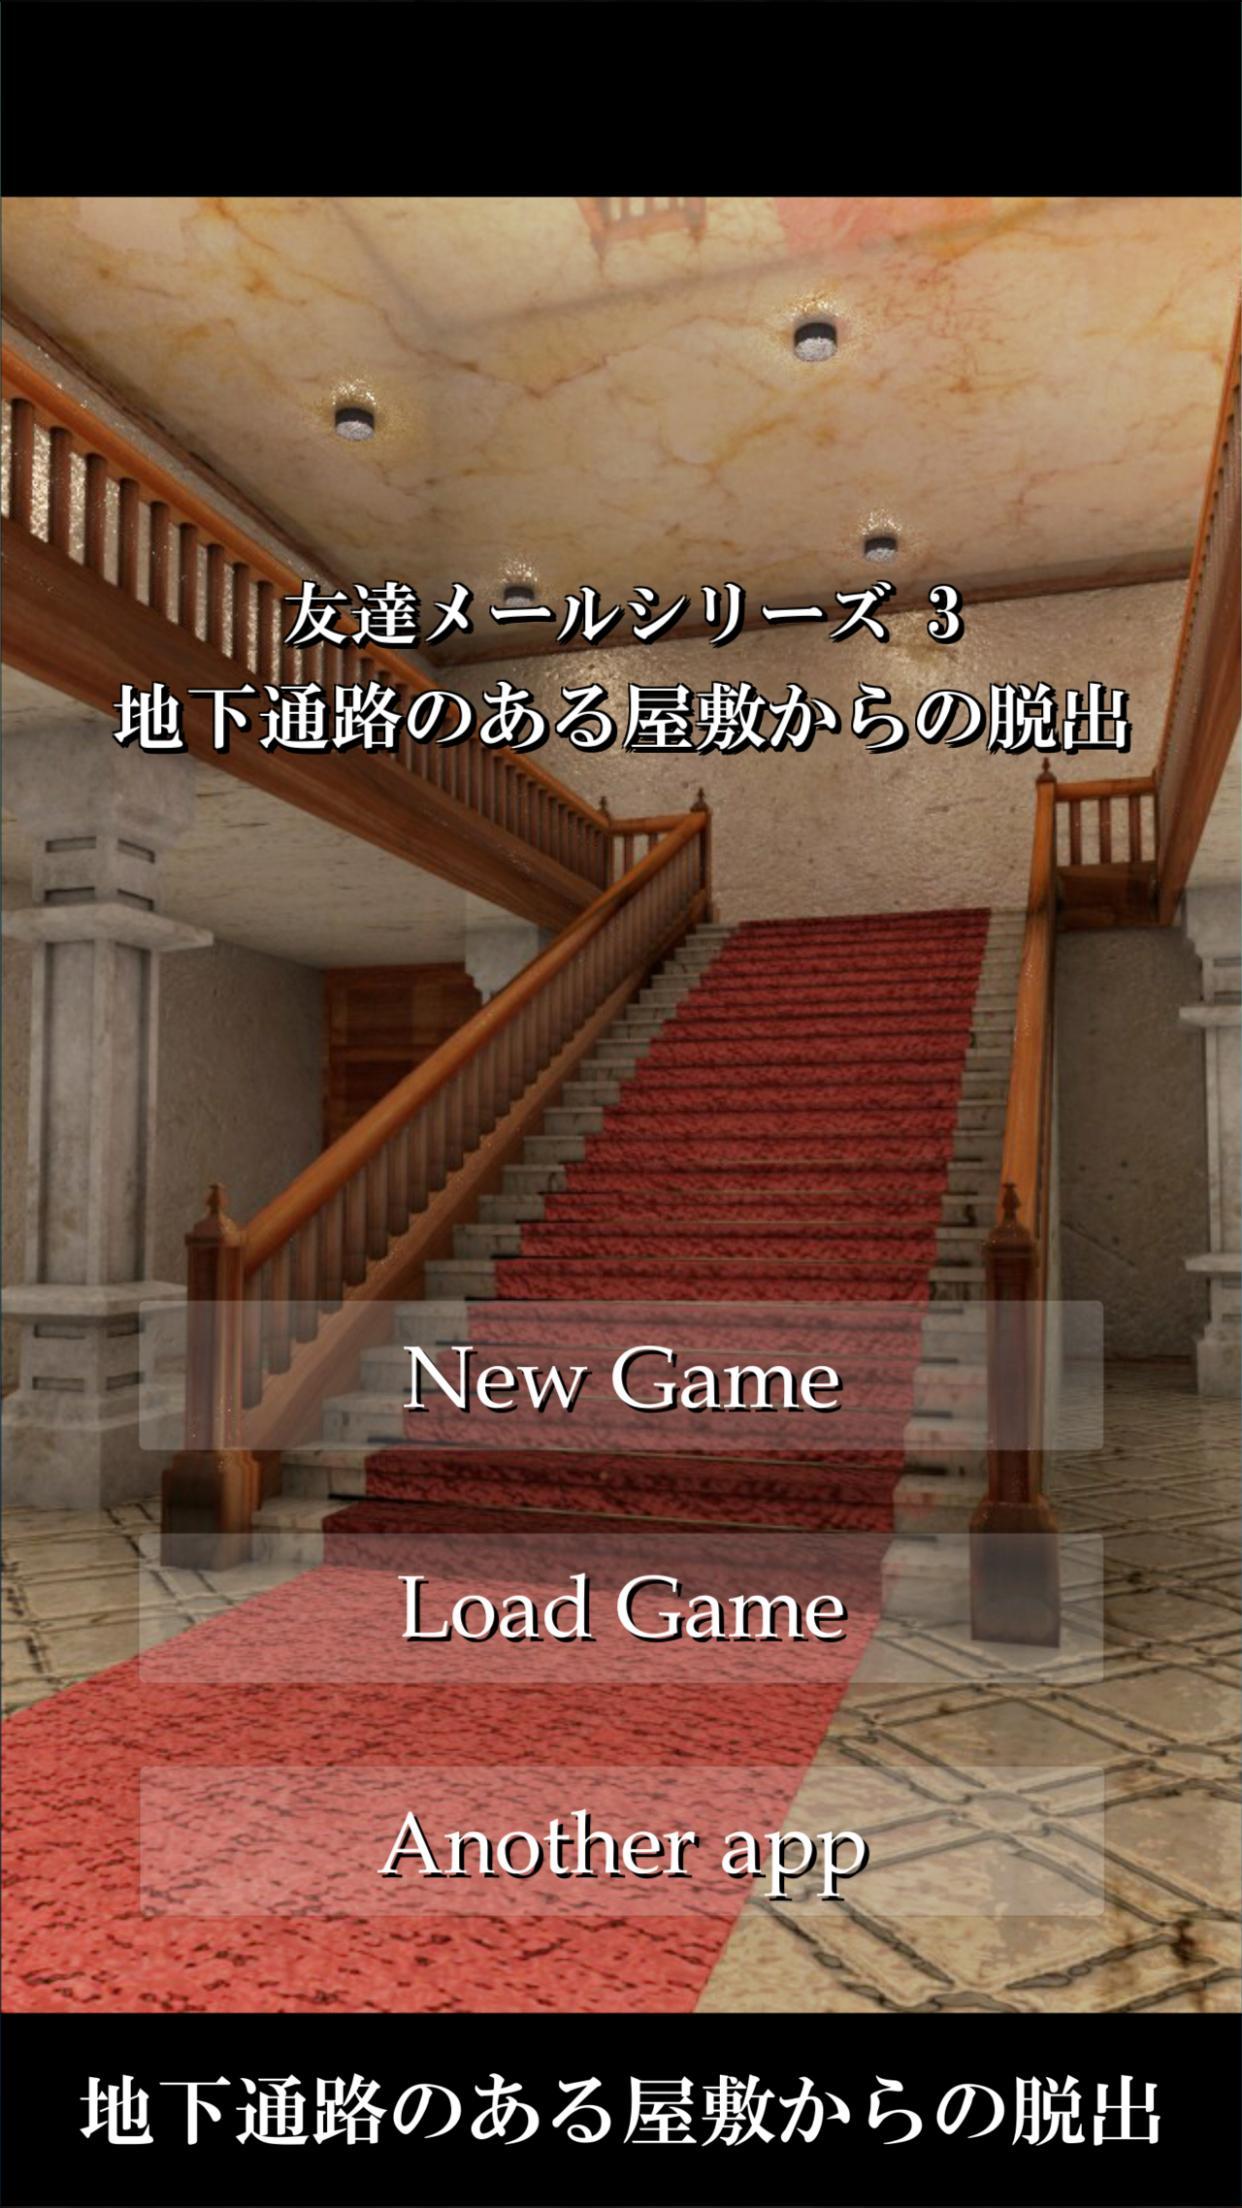 Screenshot 1 of Escape Game Melarikan diri dari mansion dengan lorong bawah tanah 